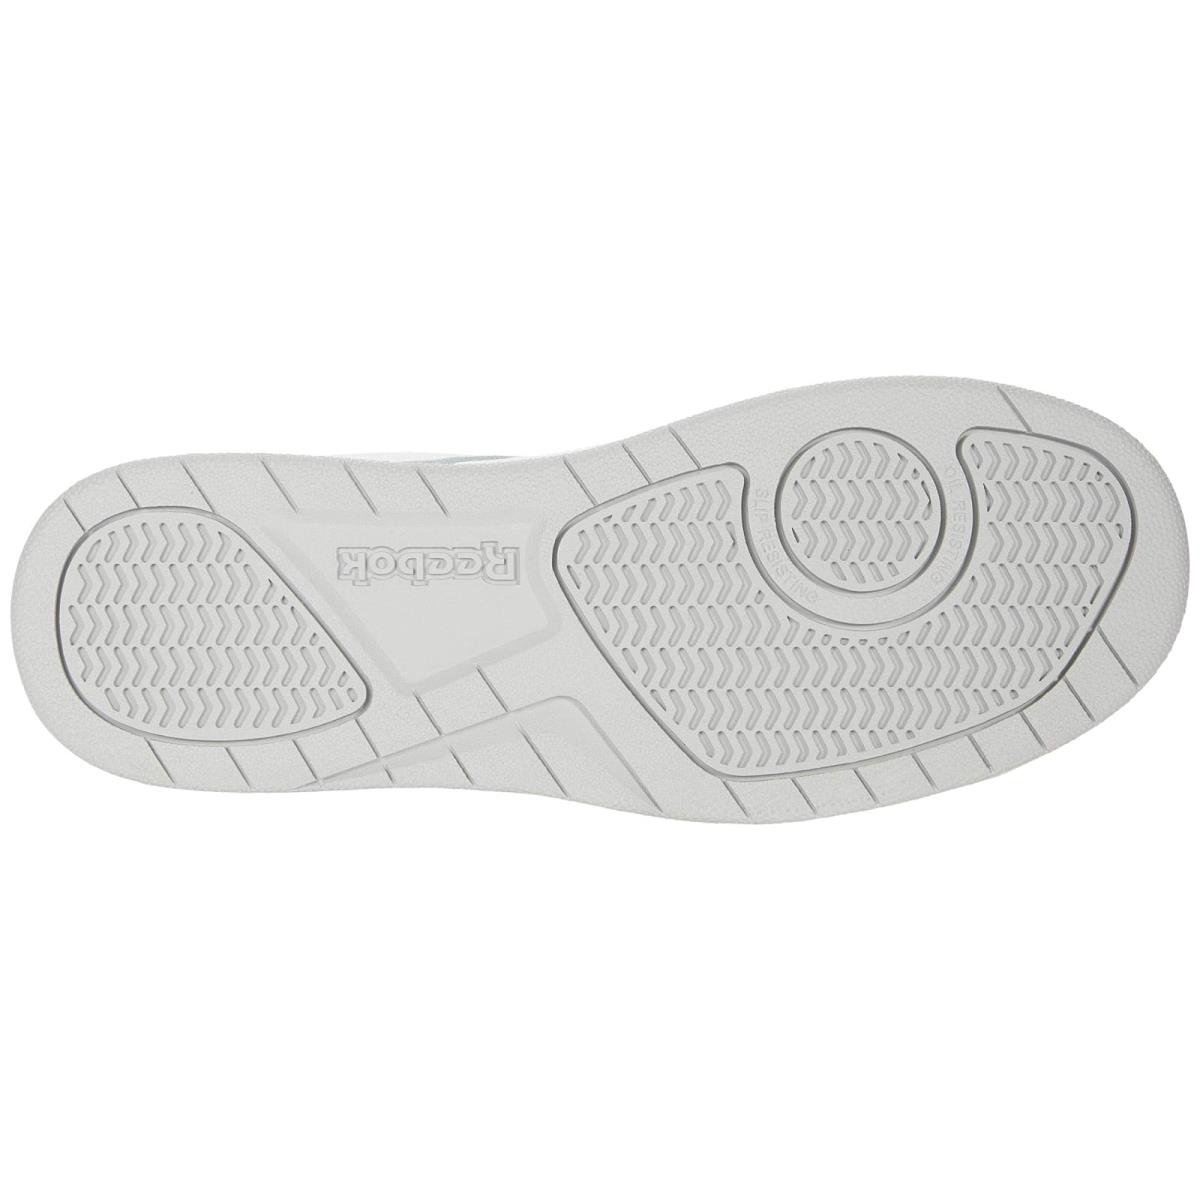 Reebok shoes  - White/Grey 1